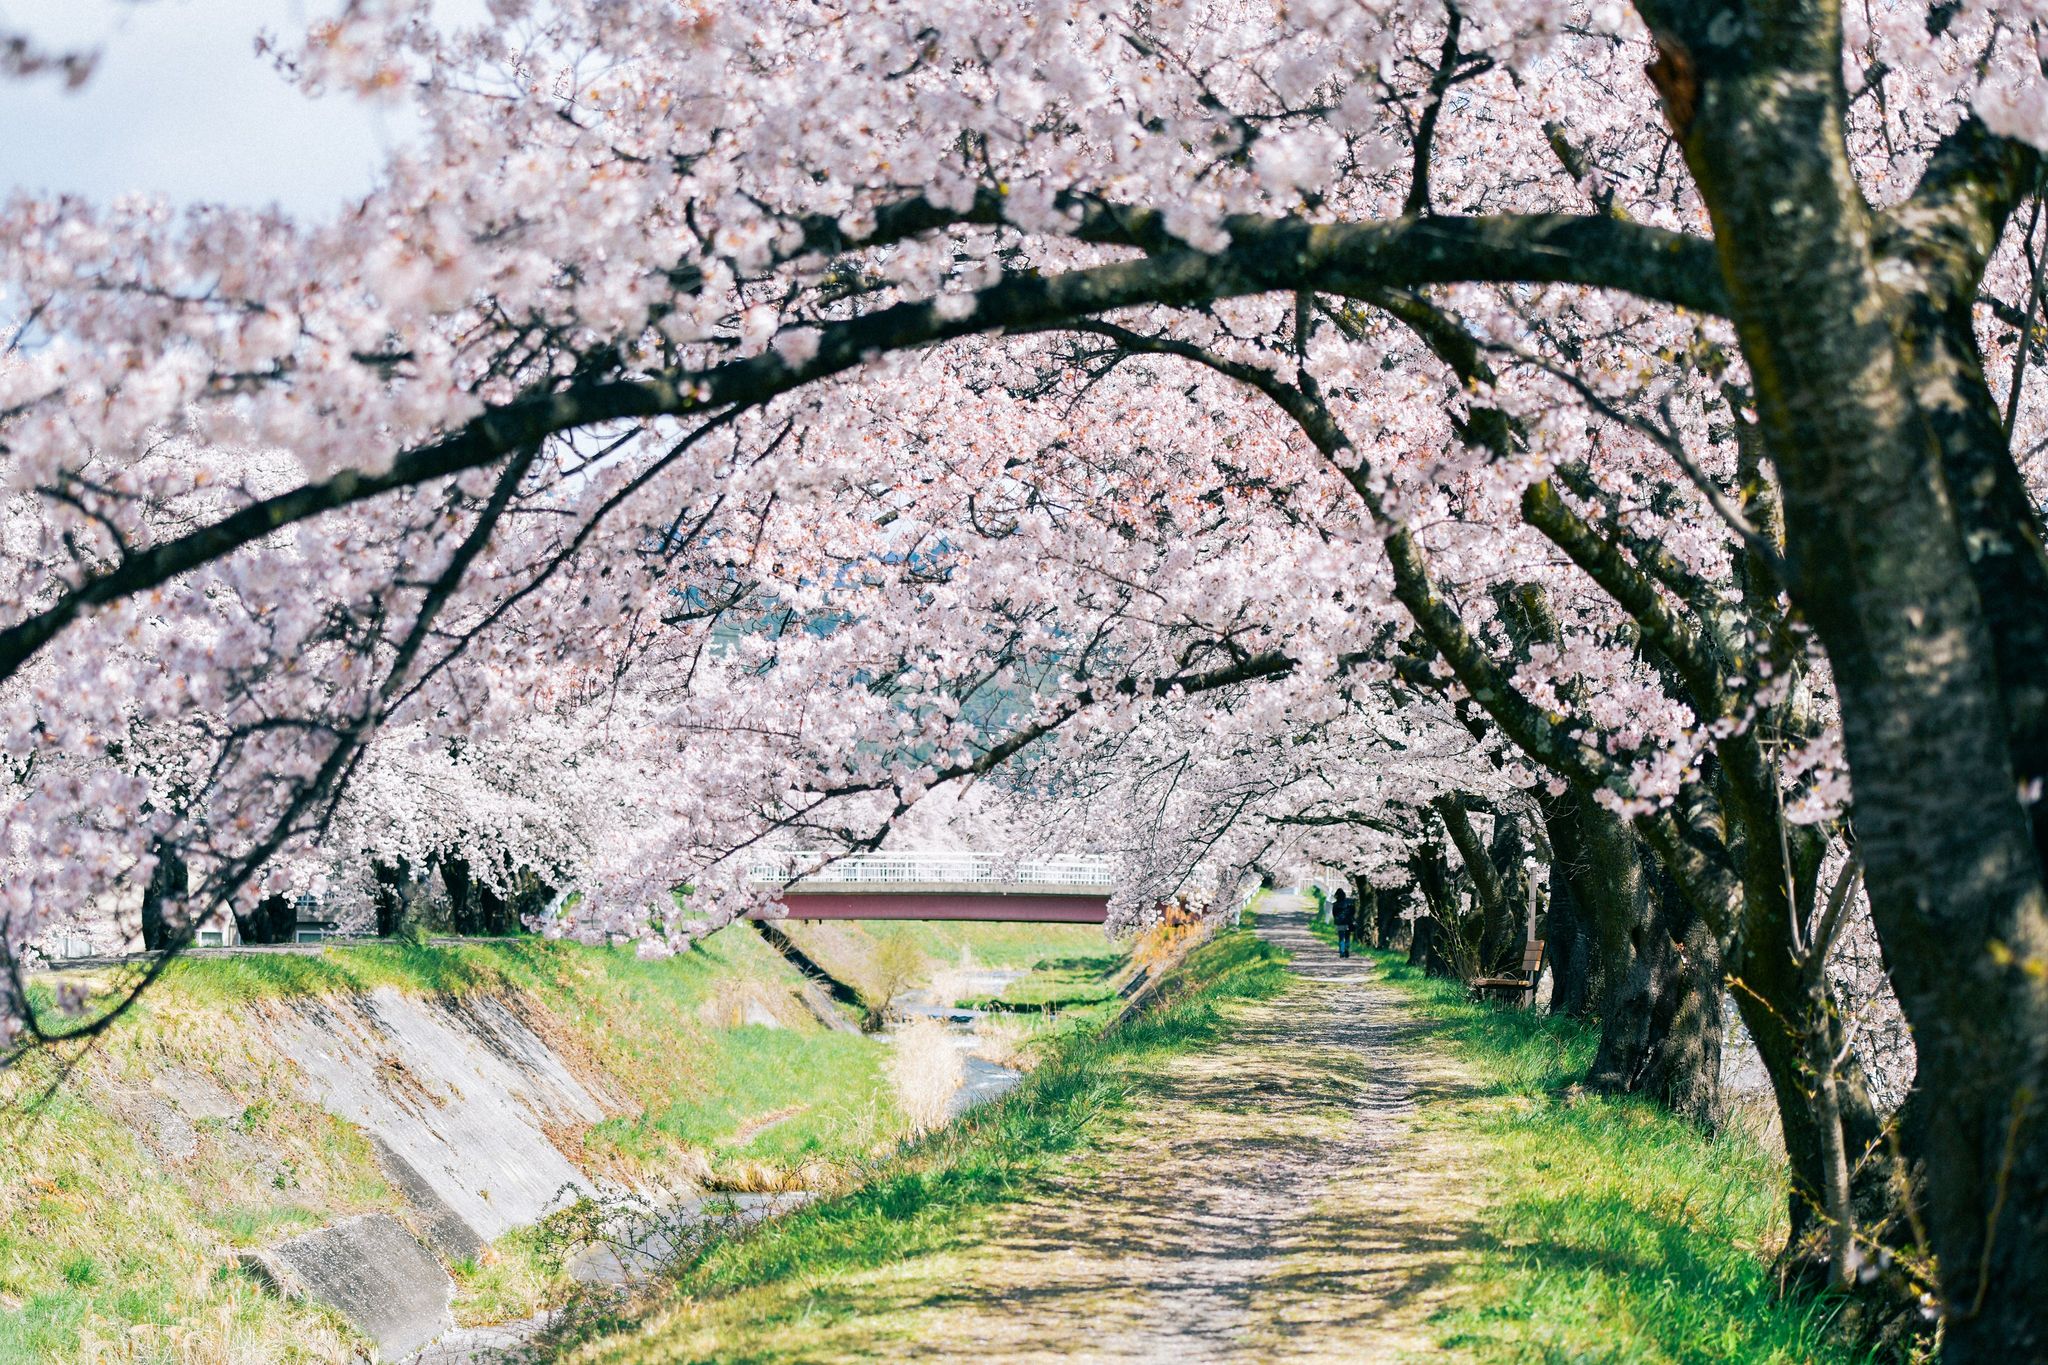 横河川の桜